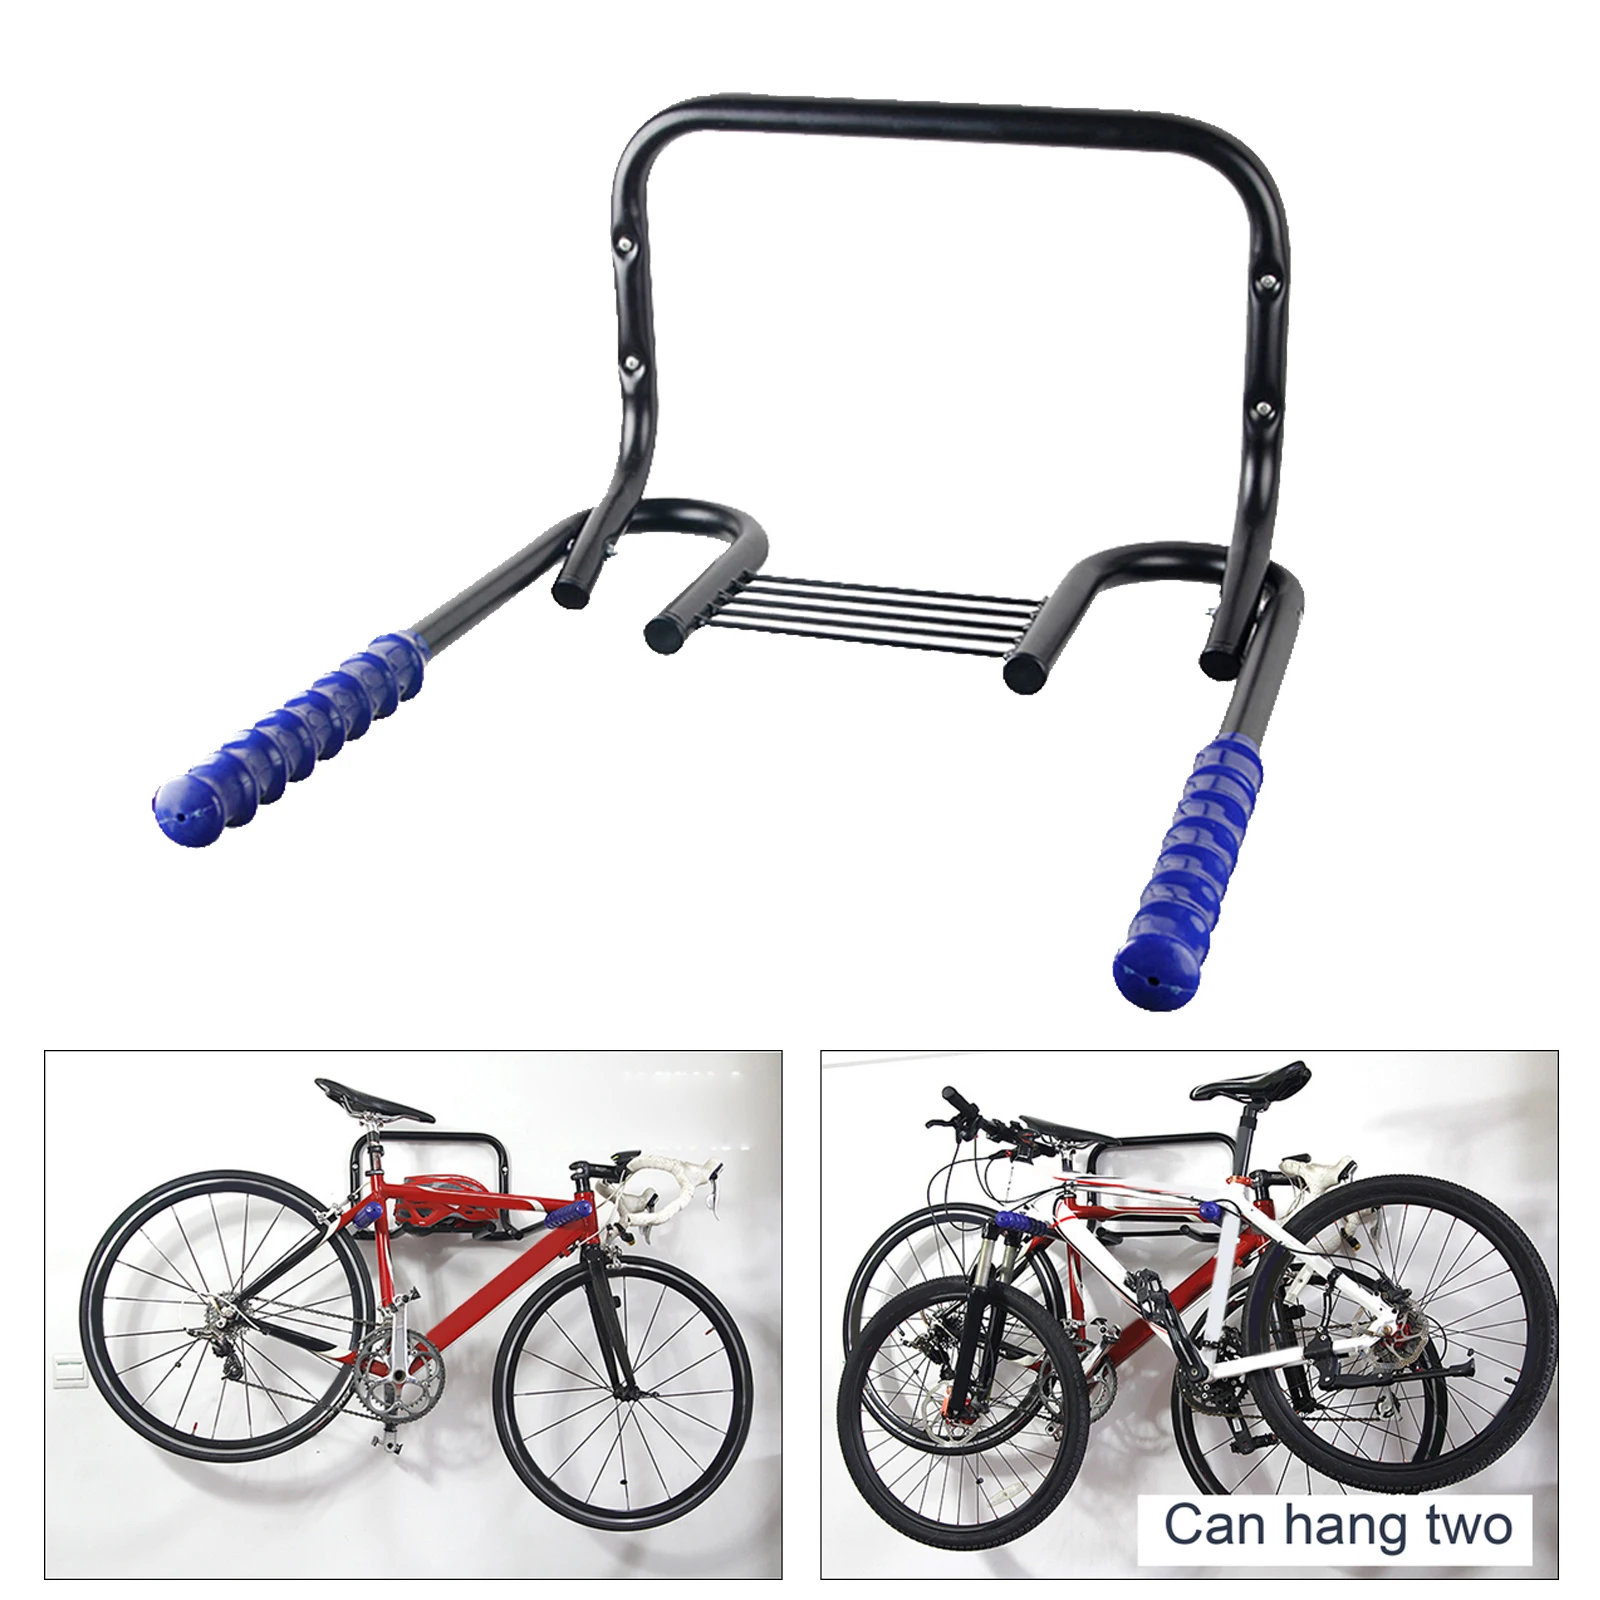 Metal Wall Mount Bike Rack Storage er Bicycle Holder Hook ing on Garage Wall with Fitting Screws